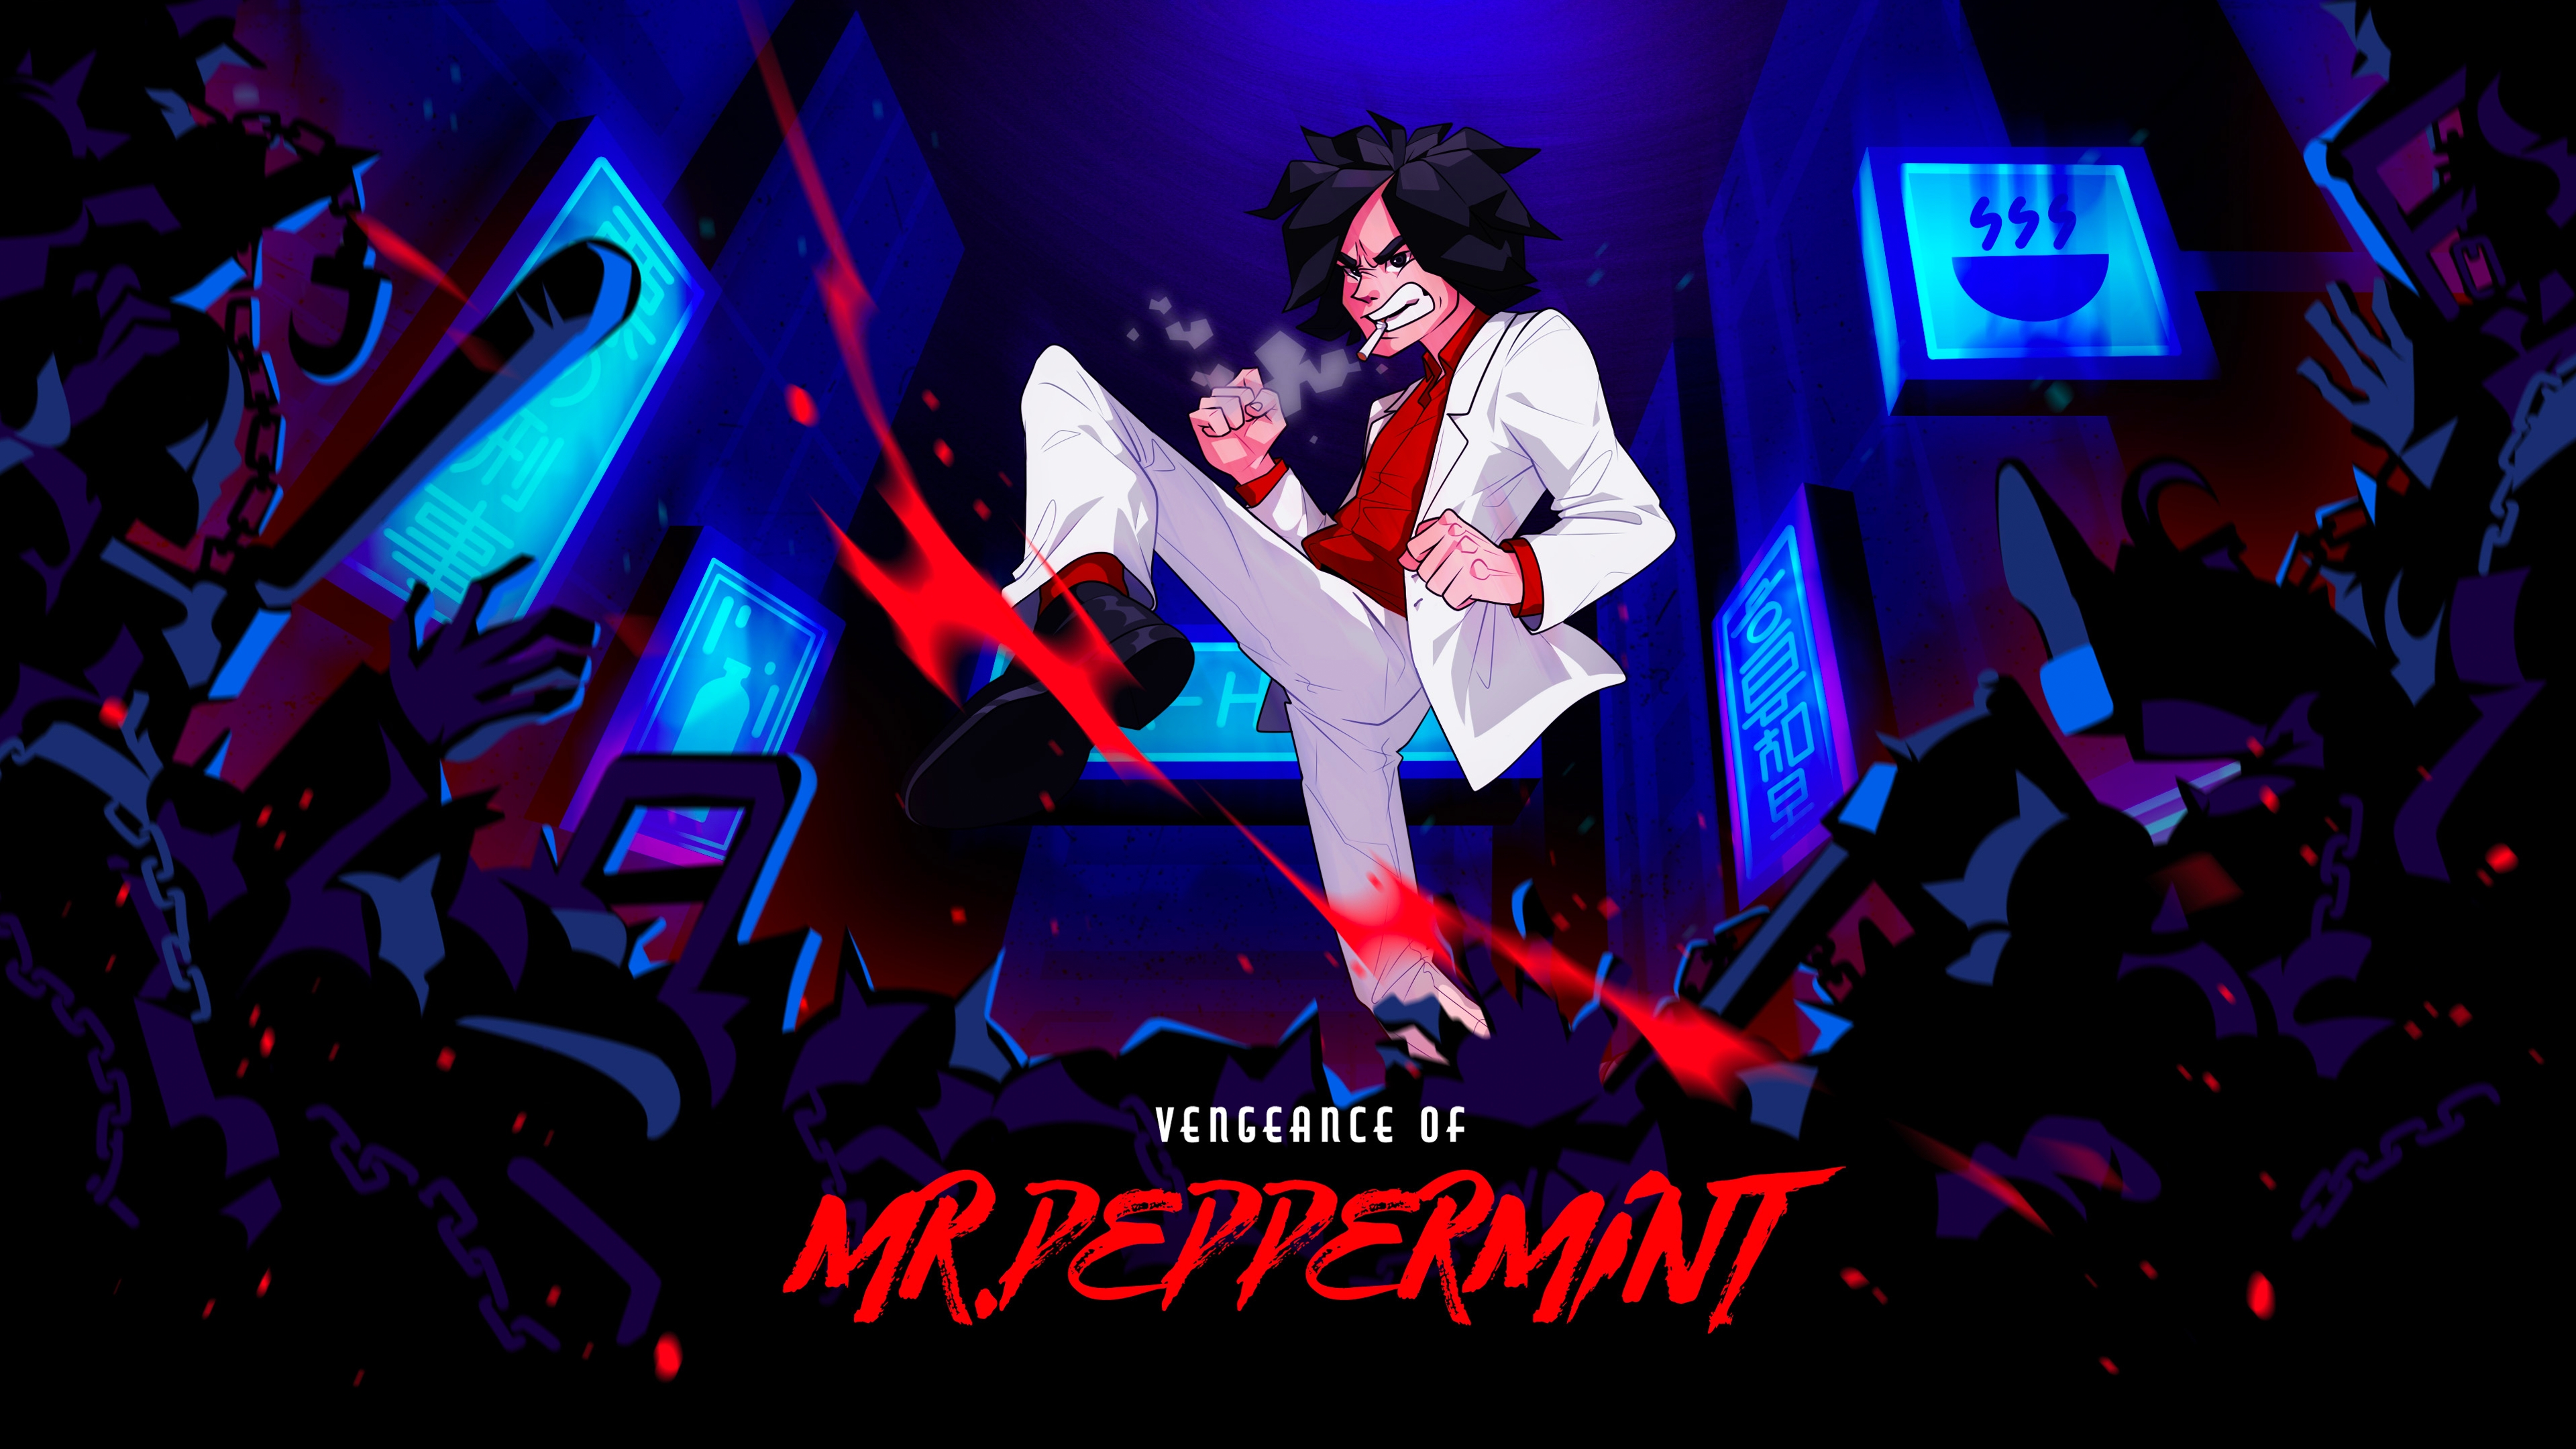 Vengeance of Mr. Peppermint Videos for PC - GameFAQs